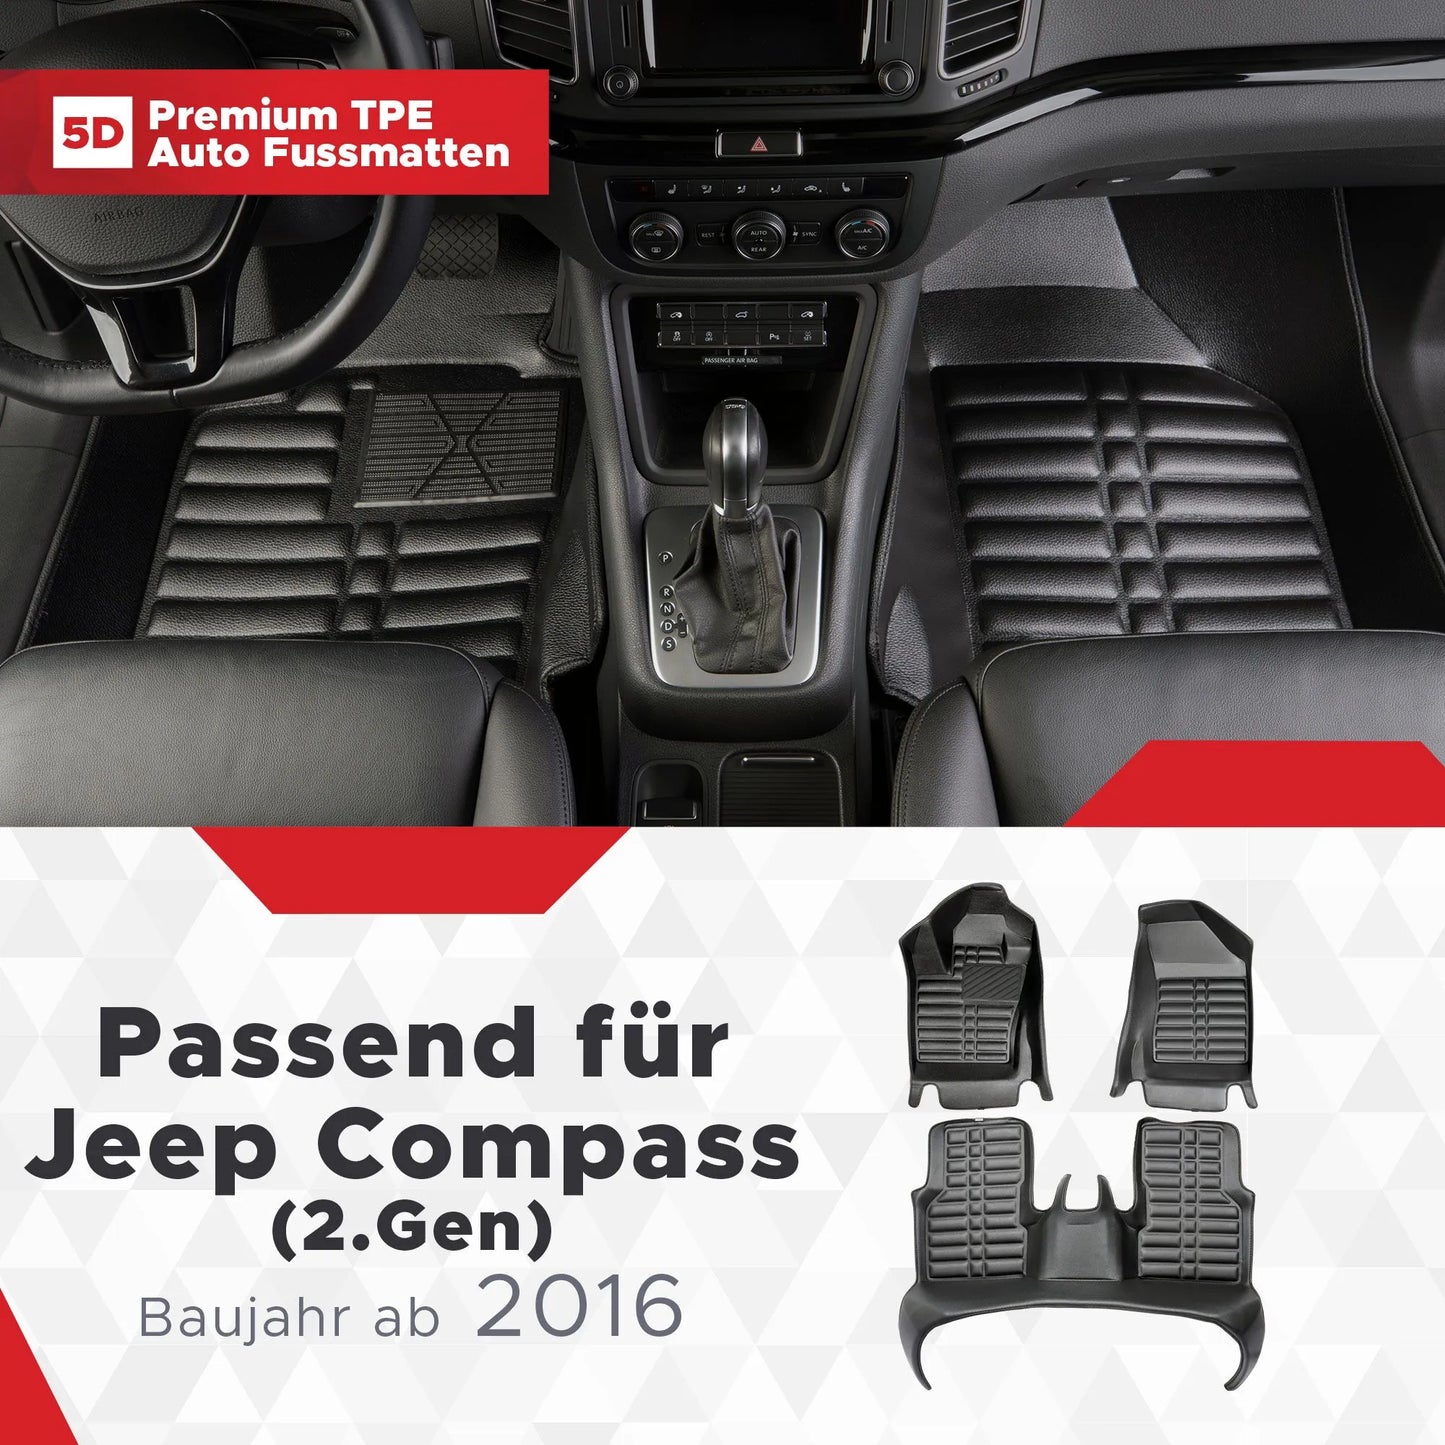 5D Starline Premium Auto Fussmatten TPE Set passend für Jeep Compass (2.Gen) Baujahr ab 2016